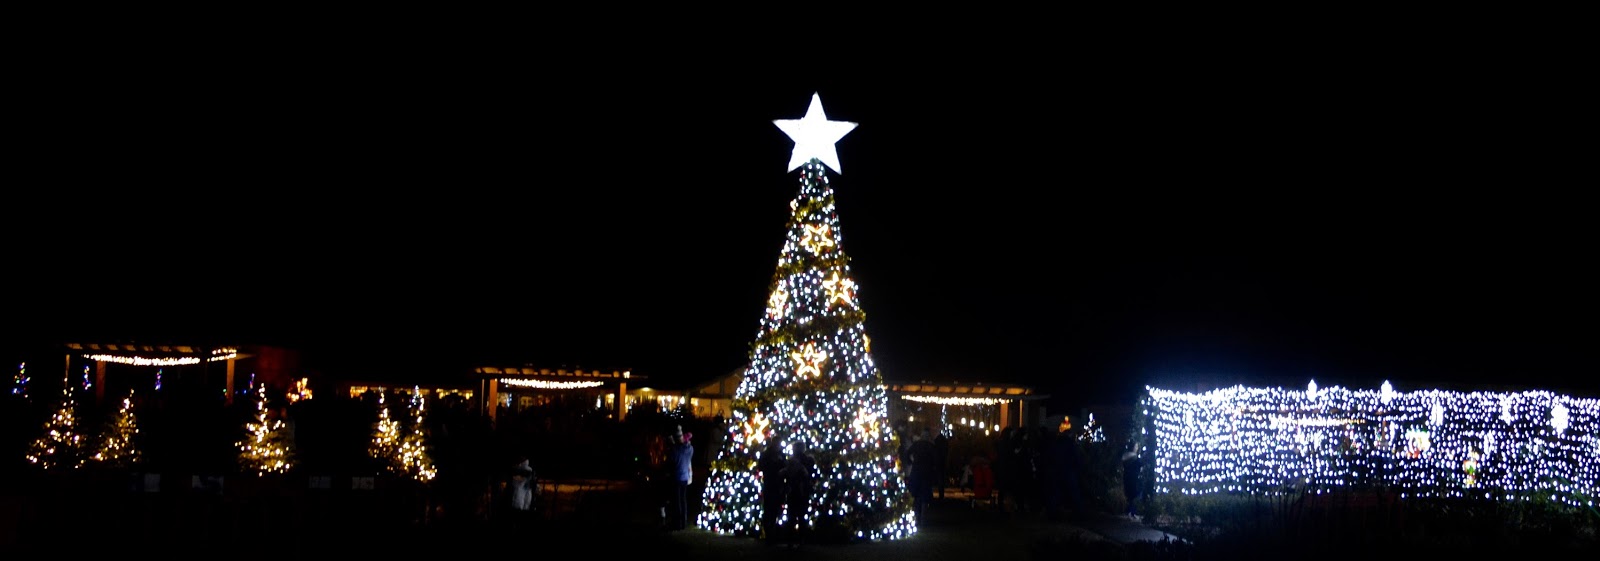 Winter Wonderland Christmas Light Show | A Wynyard Hall Garden Event - A Review